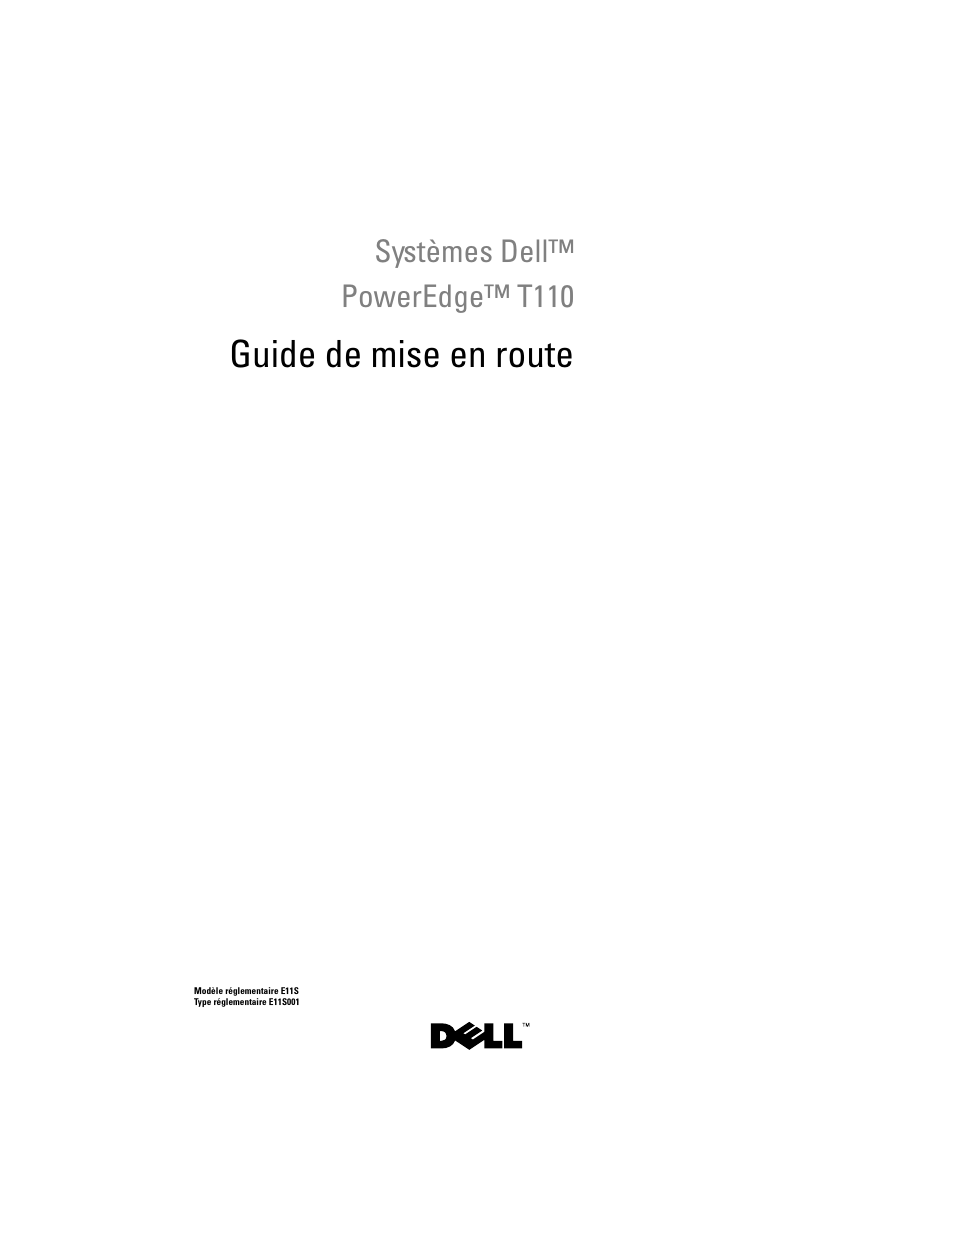 Guide de mise en route, Systèmes dell™ poweredge™ t110 | Dell PowerEdge T110 User Manual | Page 15 / 50